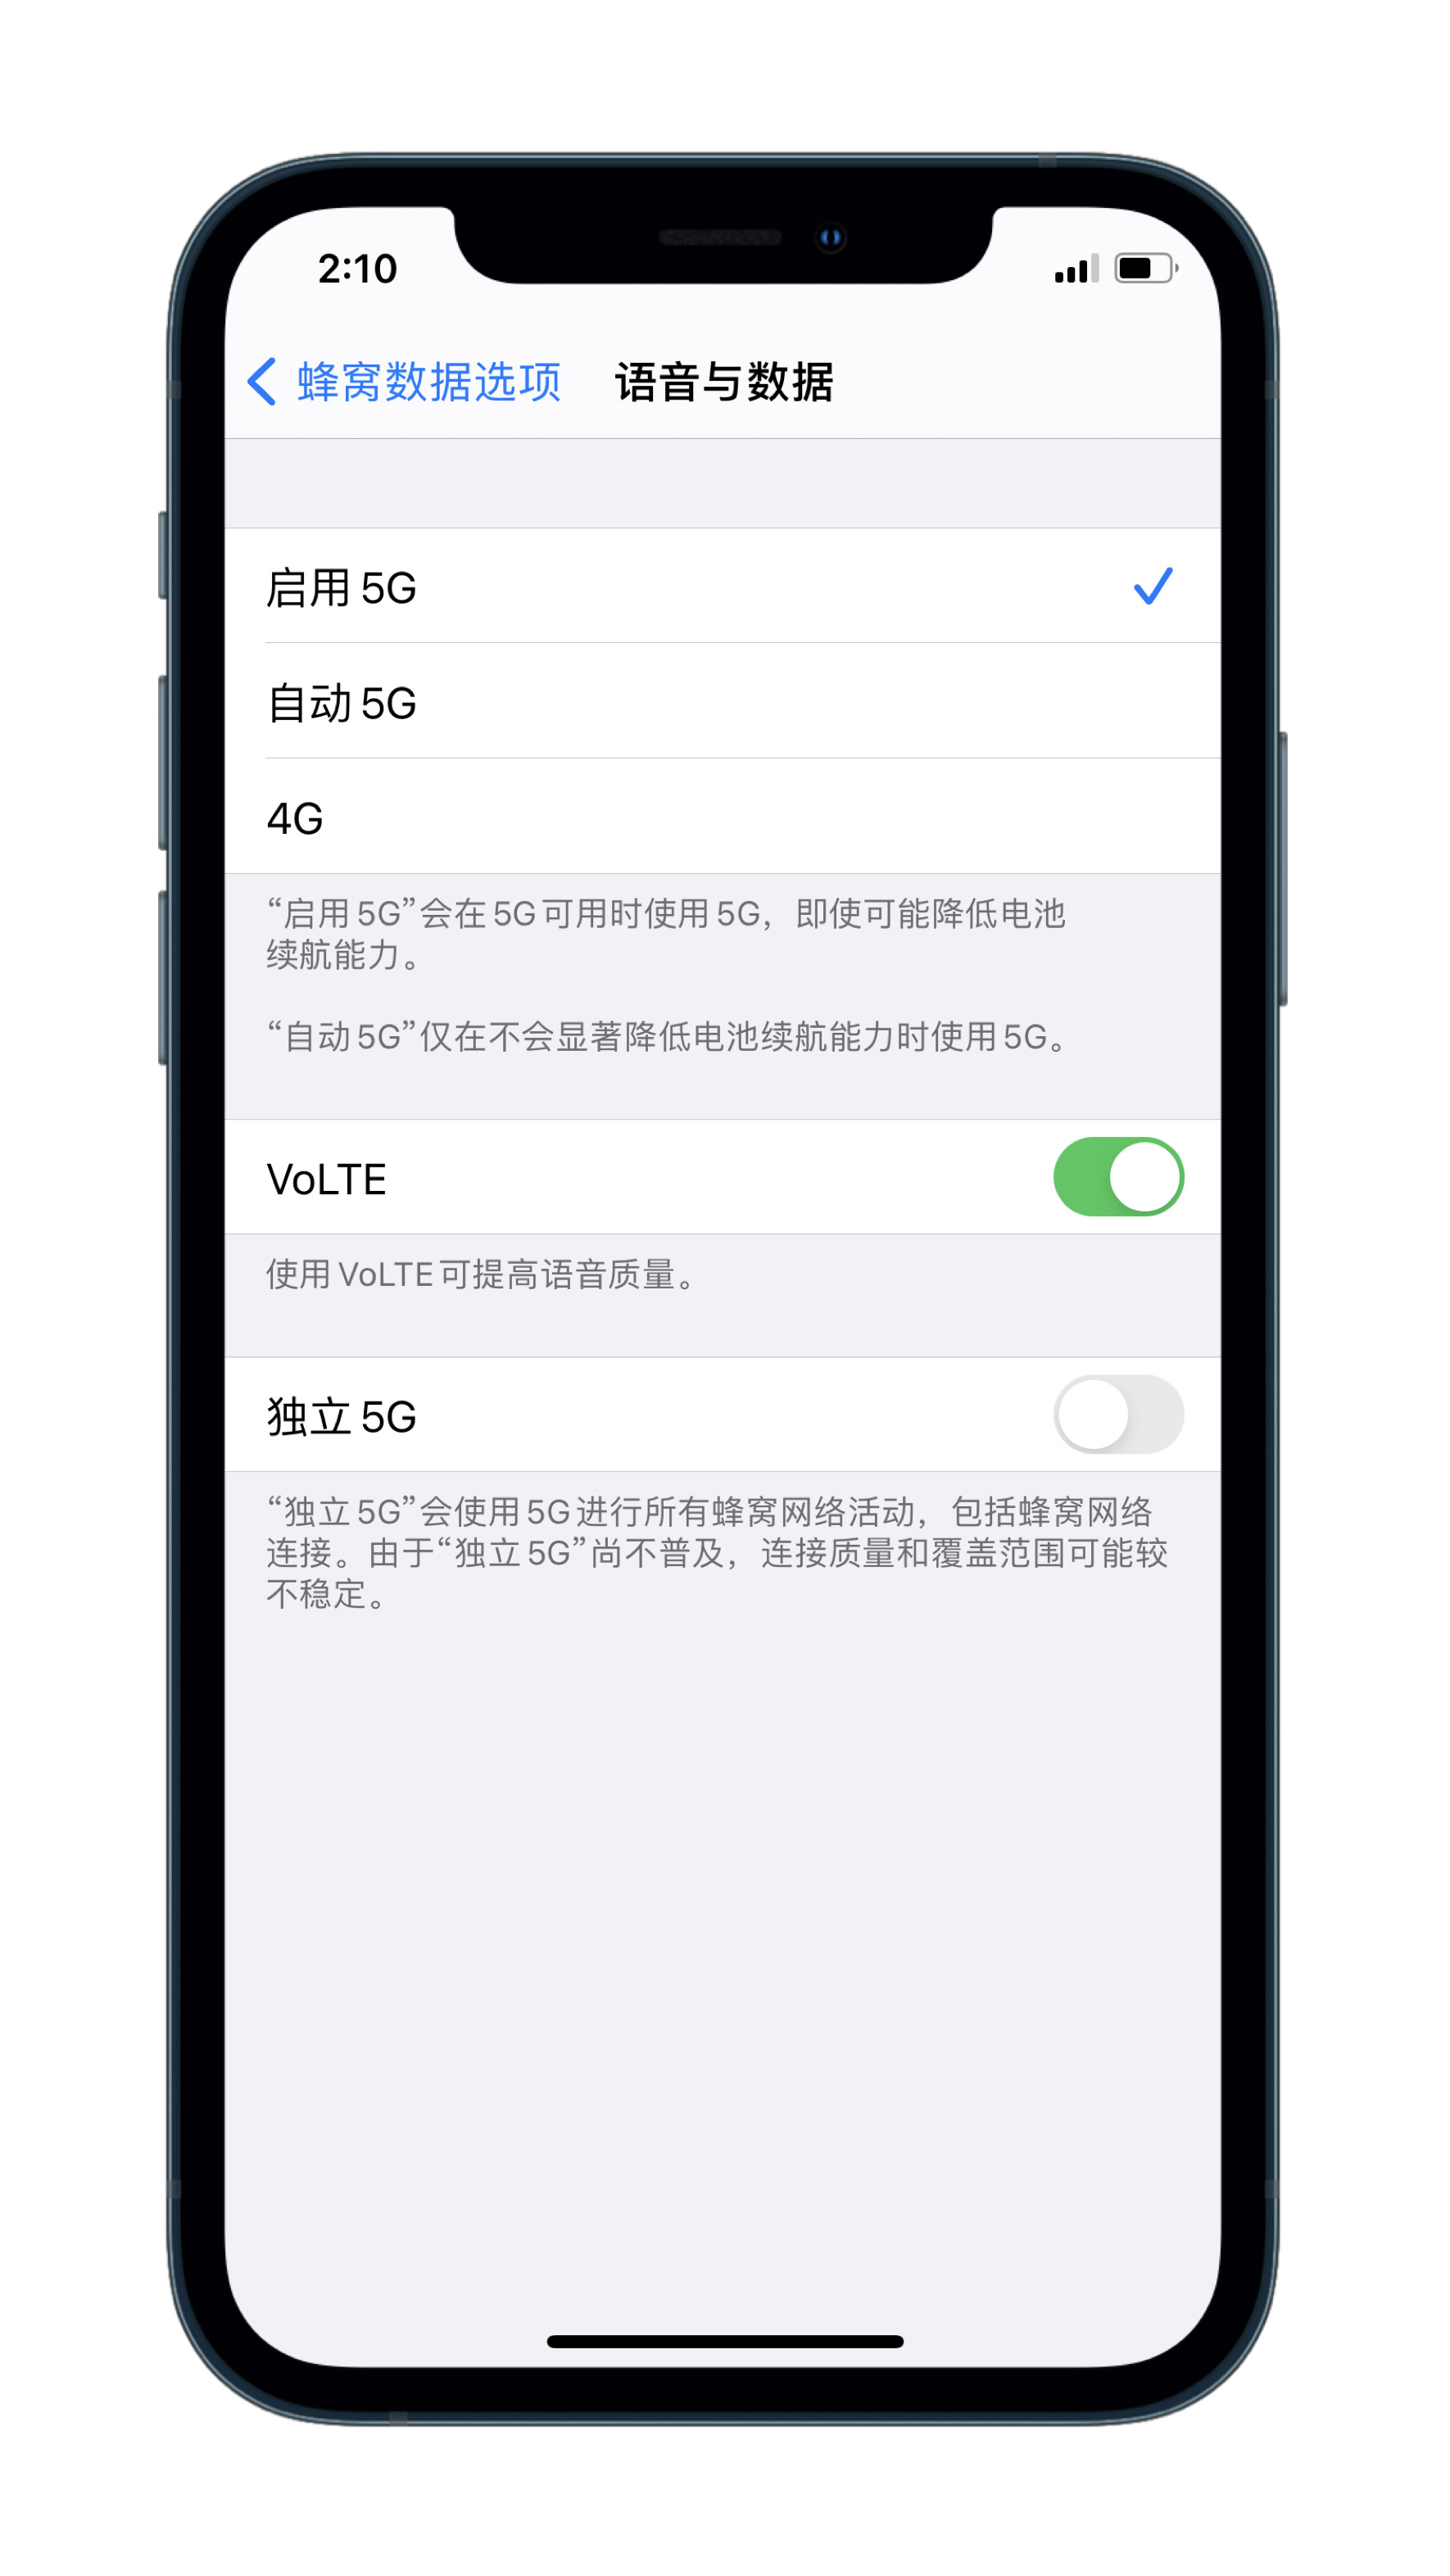 升级iOS 14.3 正式版后能使用双卡独立 5G吗？